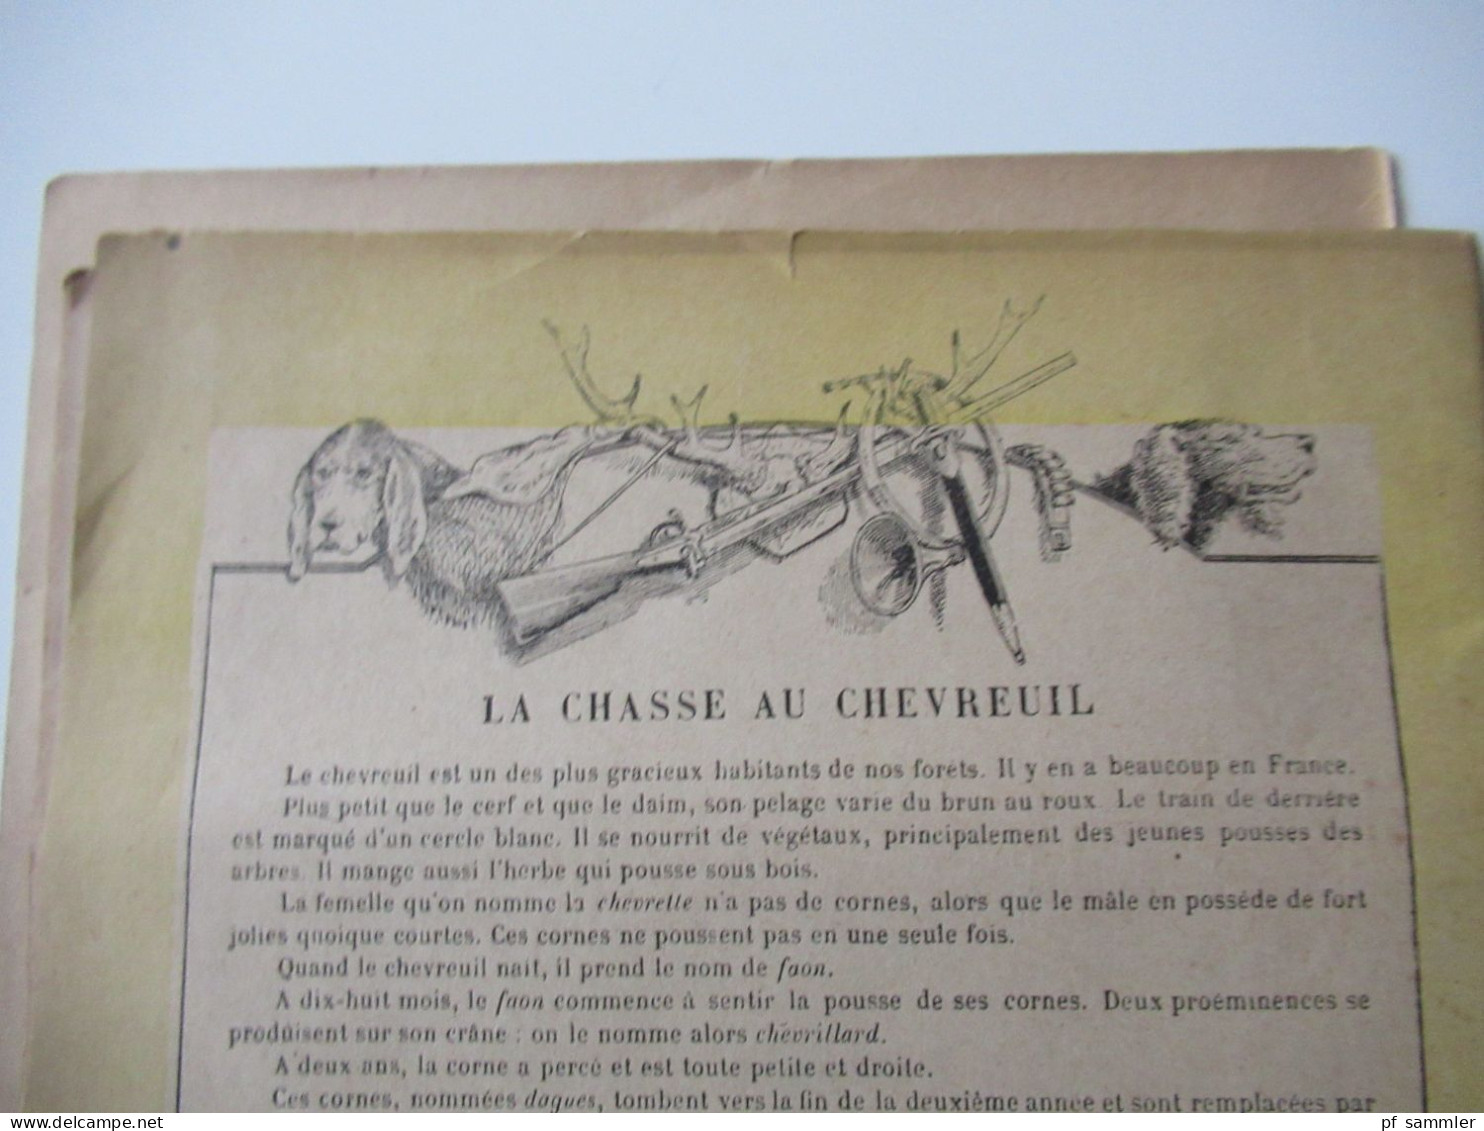 Frankreich 1870 Heft Collection Godchaux / Jäger / Tagebuch / Journaux l'egide prussienne / Krieg 1870 / 1871